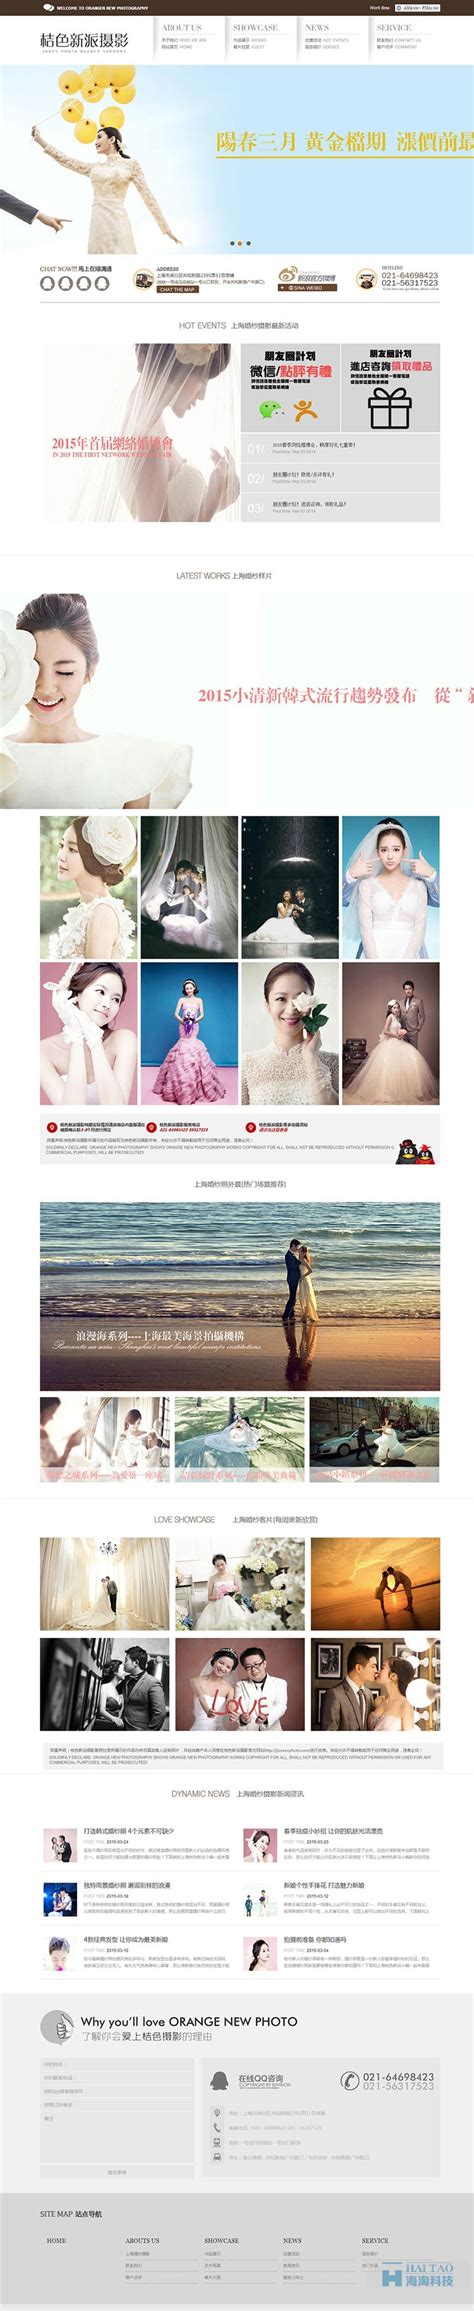 桔色新派摄影网站设计,上海婚纱摄影网页设计,婚纱摄影网站建设方案-海淘科技